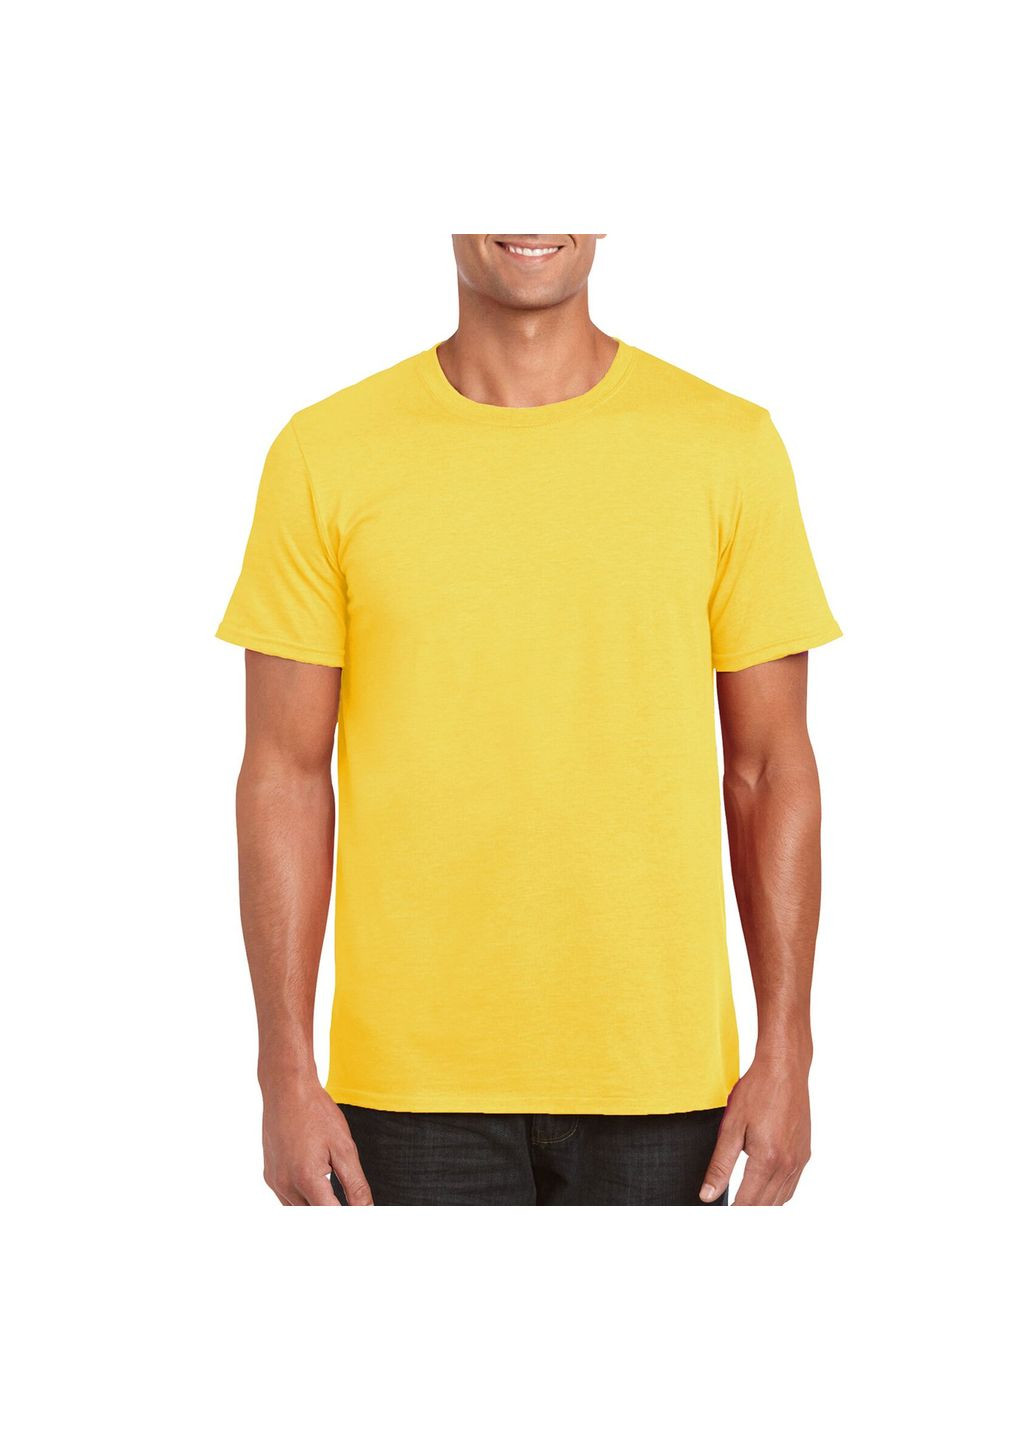 Желтая футболка мужская однотонная желтая 64000-122c с коротким рукавом Gildan Softstyle